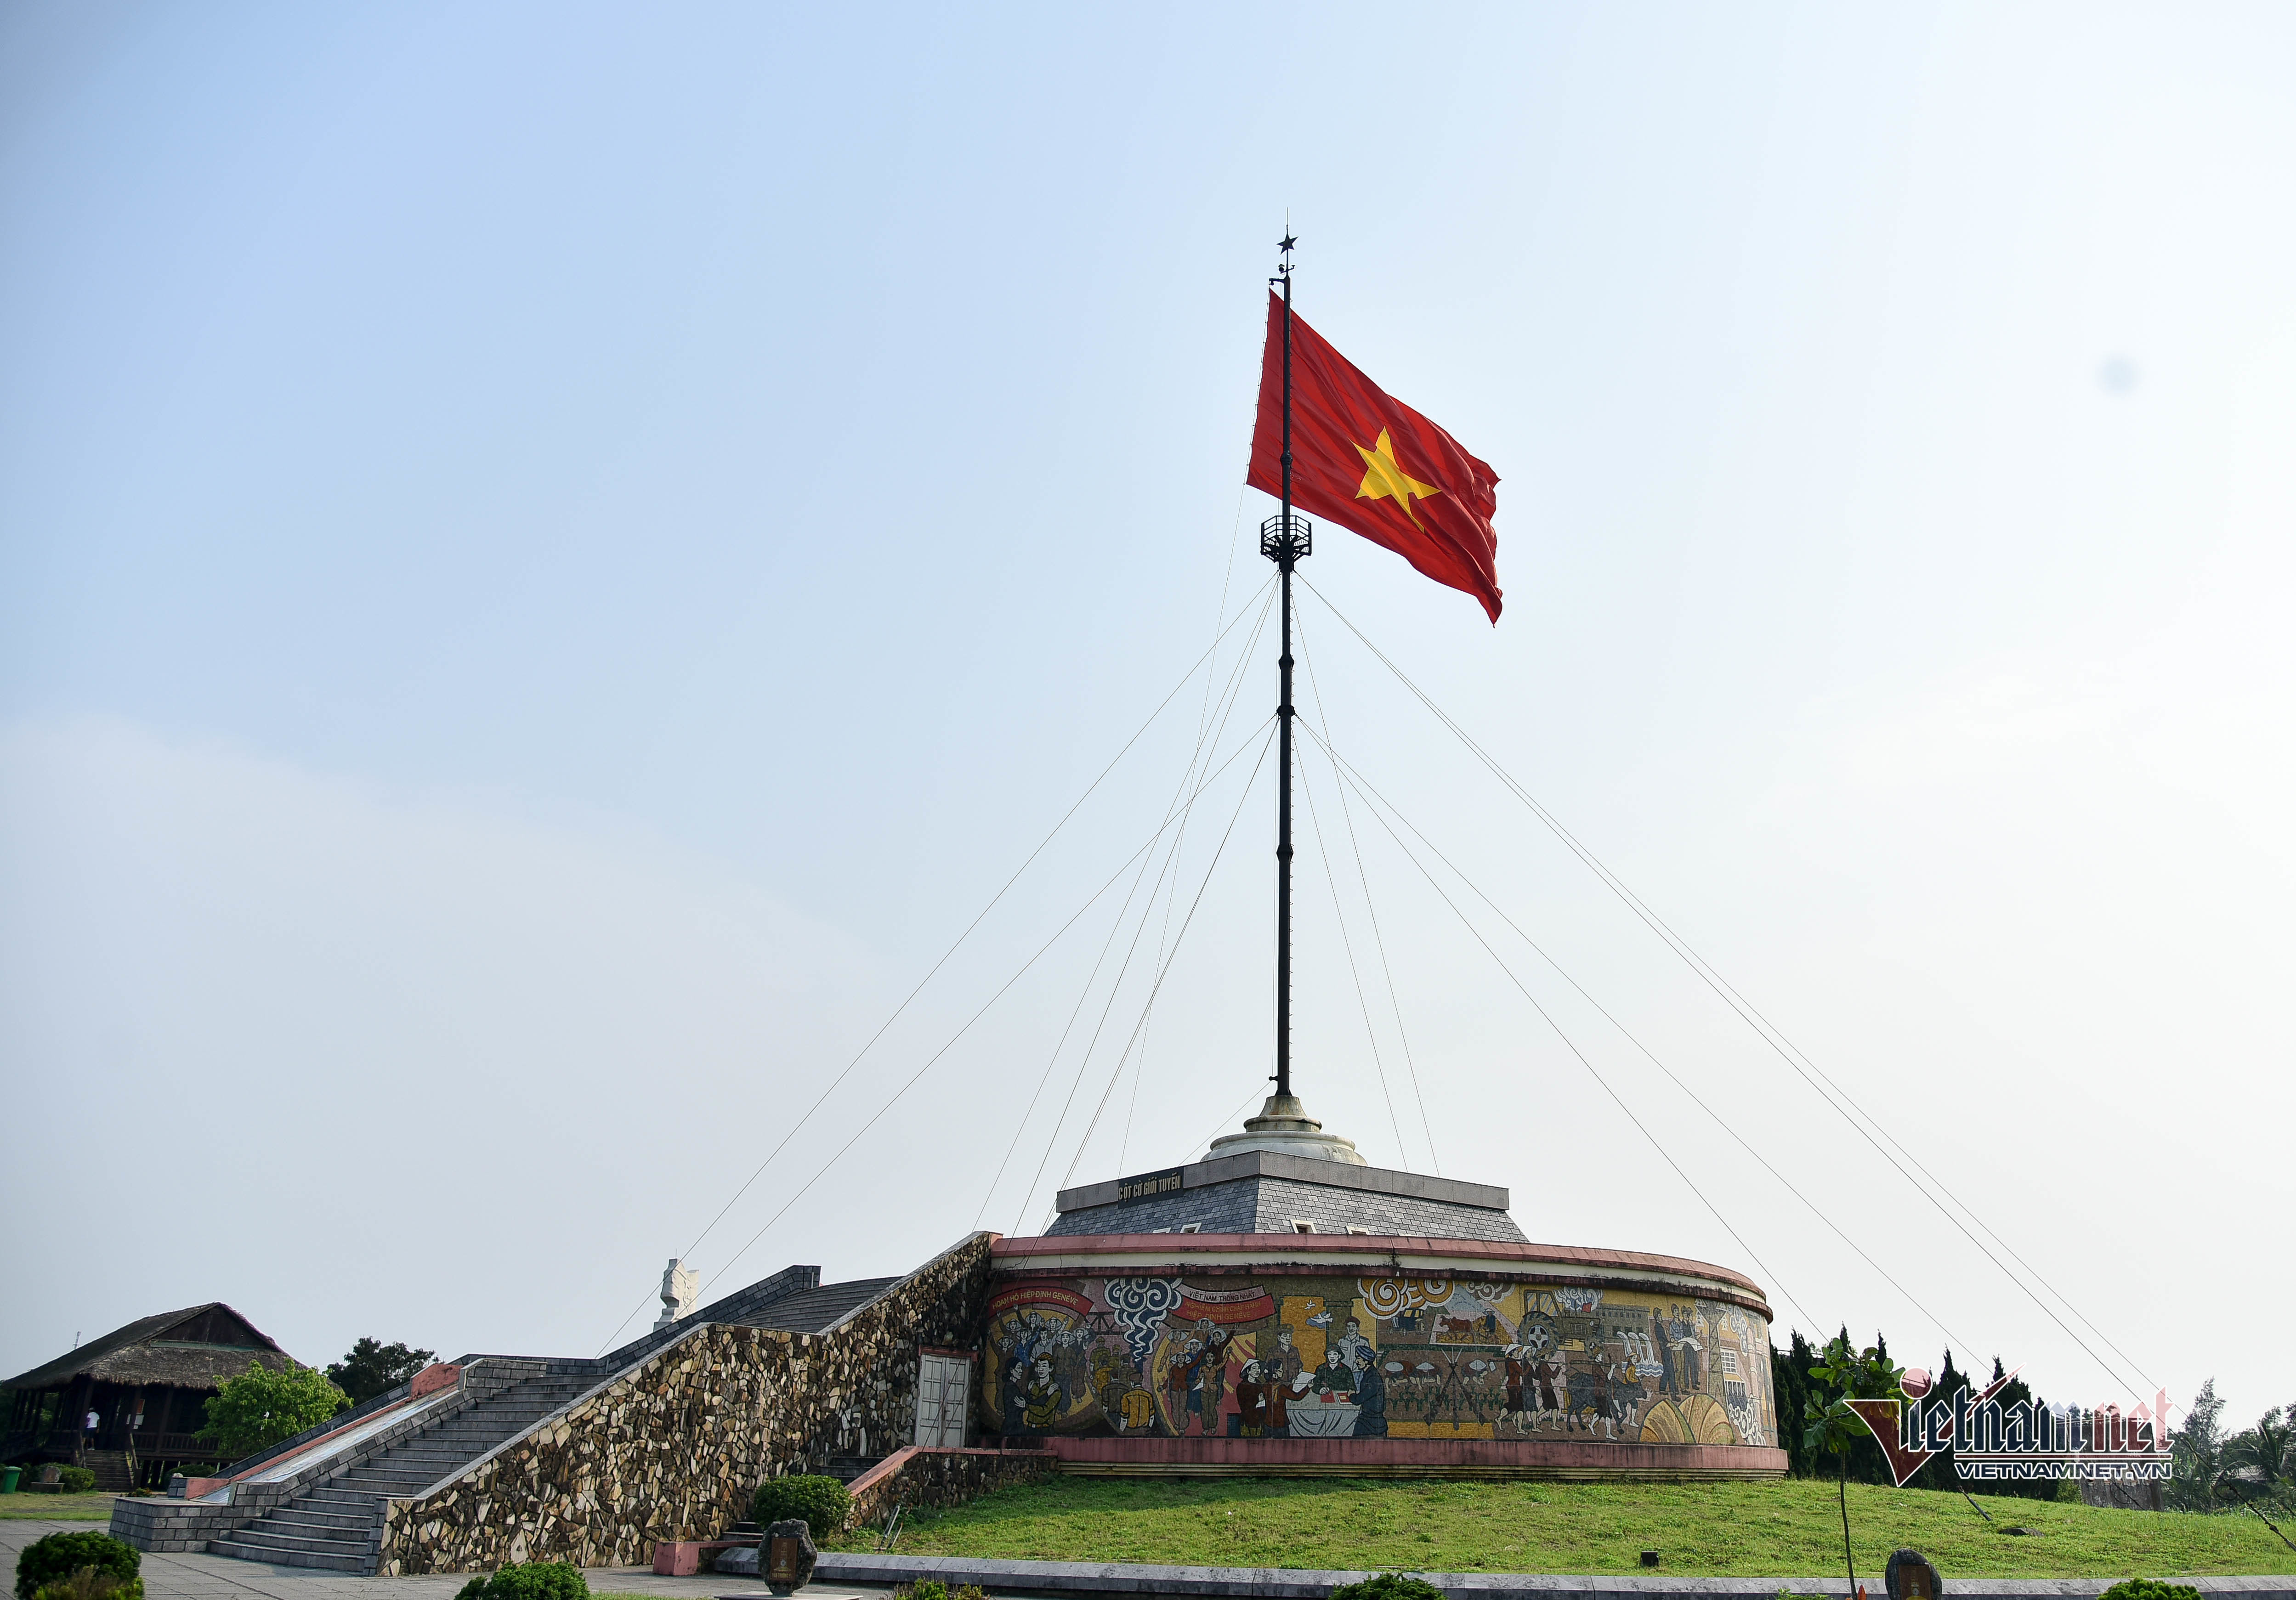 Cuộc đọ sức cờ giữa hai bờ giới tuyến Hiền Lương là hoạt động quan trọng và ý nghĩa đối với Việt Nam và Trung Quốc. Những ngày lễ lớn của hai quốc gia thường được tổ chức tại biên giới Hiền Lương, thu hút sự chú ý của người dân hai nước. Đọ sức cờ giữa hai bờ giới cũng là hoạt động quan trọng nhằm kiến tạo mối quan hệ tốt đẹp giữa hai nước, đóng góp cho sự ổn định và phát triển trong khu vực.